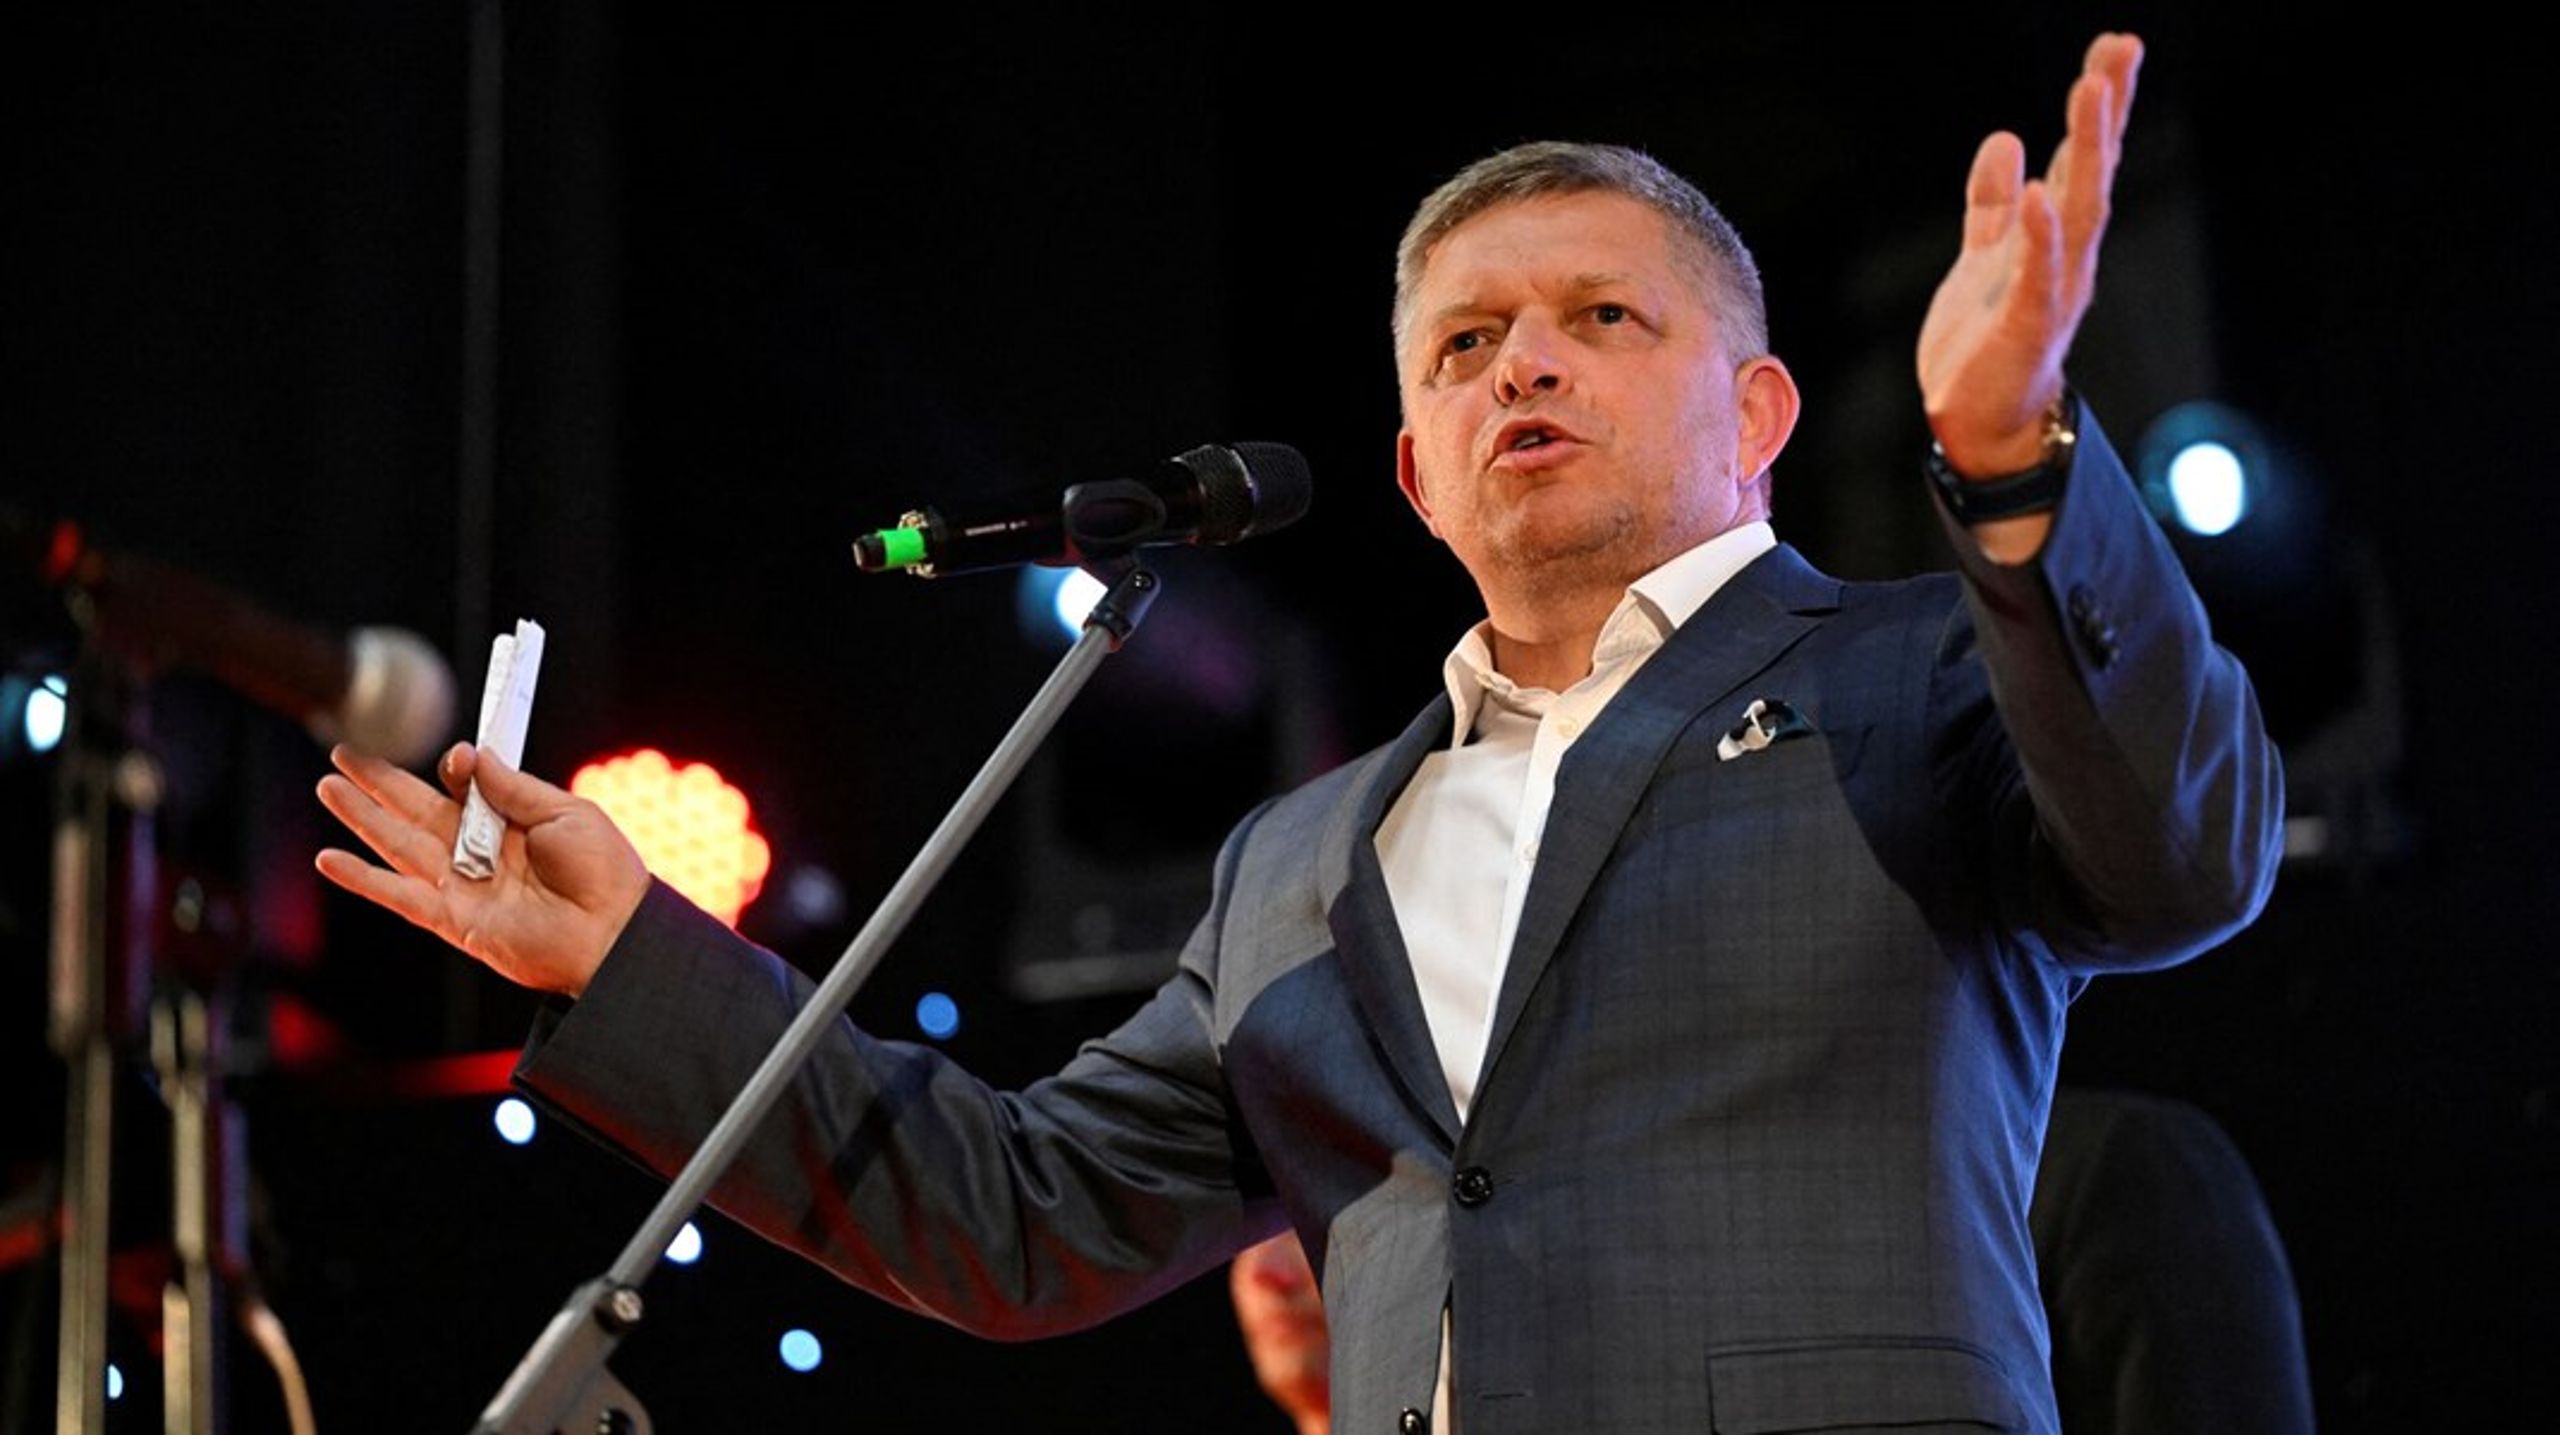 Lederen af det slovakiske SMER-parti, Robert Fico, har svoret, at der ikke bliver leveret så meget som én pistolkugle mere til Ukraine, hvis han genvinder magten ved valget på lørdag.